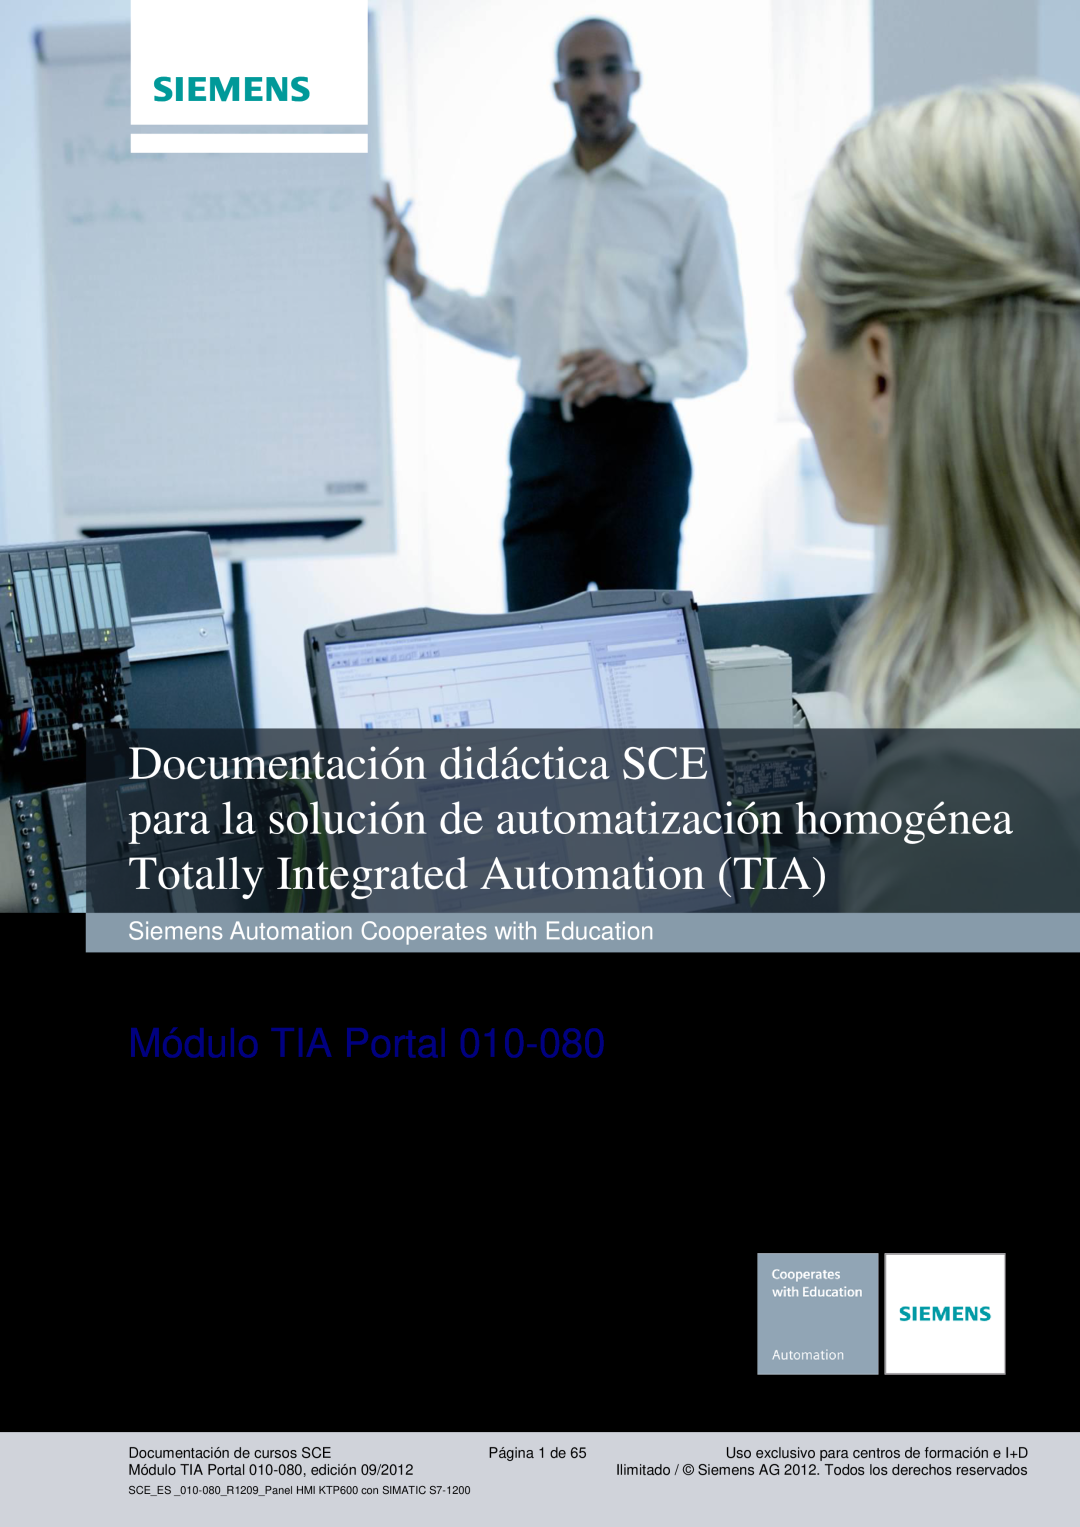 Siemens 010-080 manual Industry Sector, IA&DT, Documentación didáctica SCE, Módulo TIA Portal, Documentación de cursos SCE 